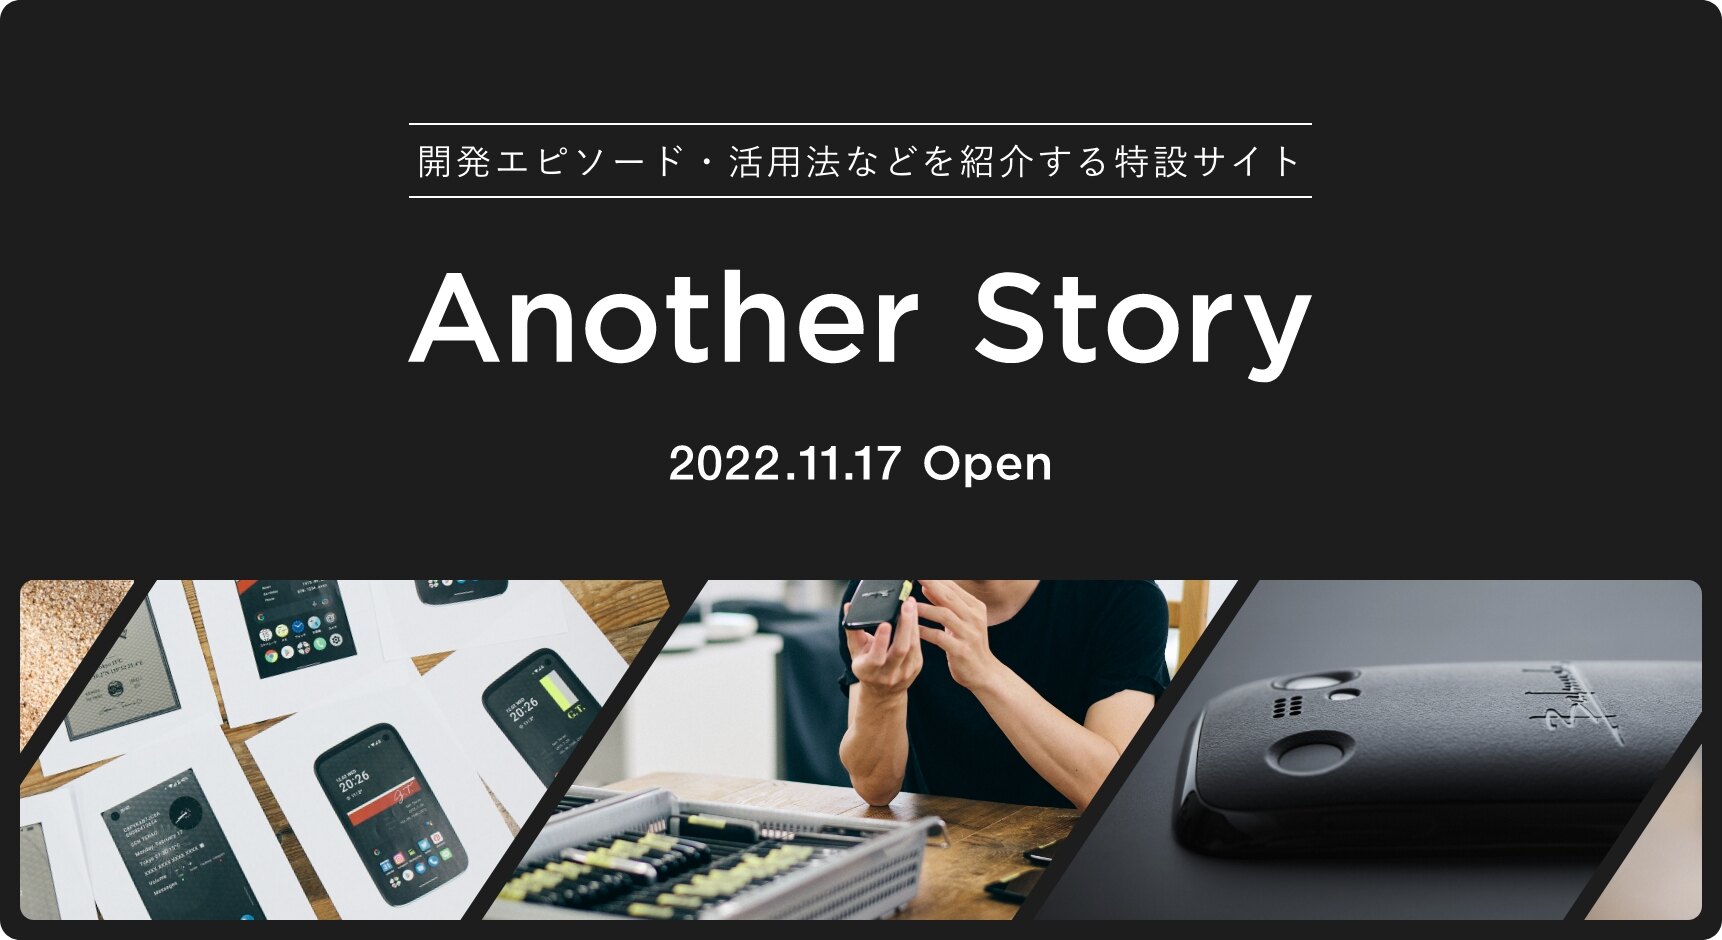 開発エピソード・活用法などを紹介する特設サイト Another Story 2022.11.17 Open